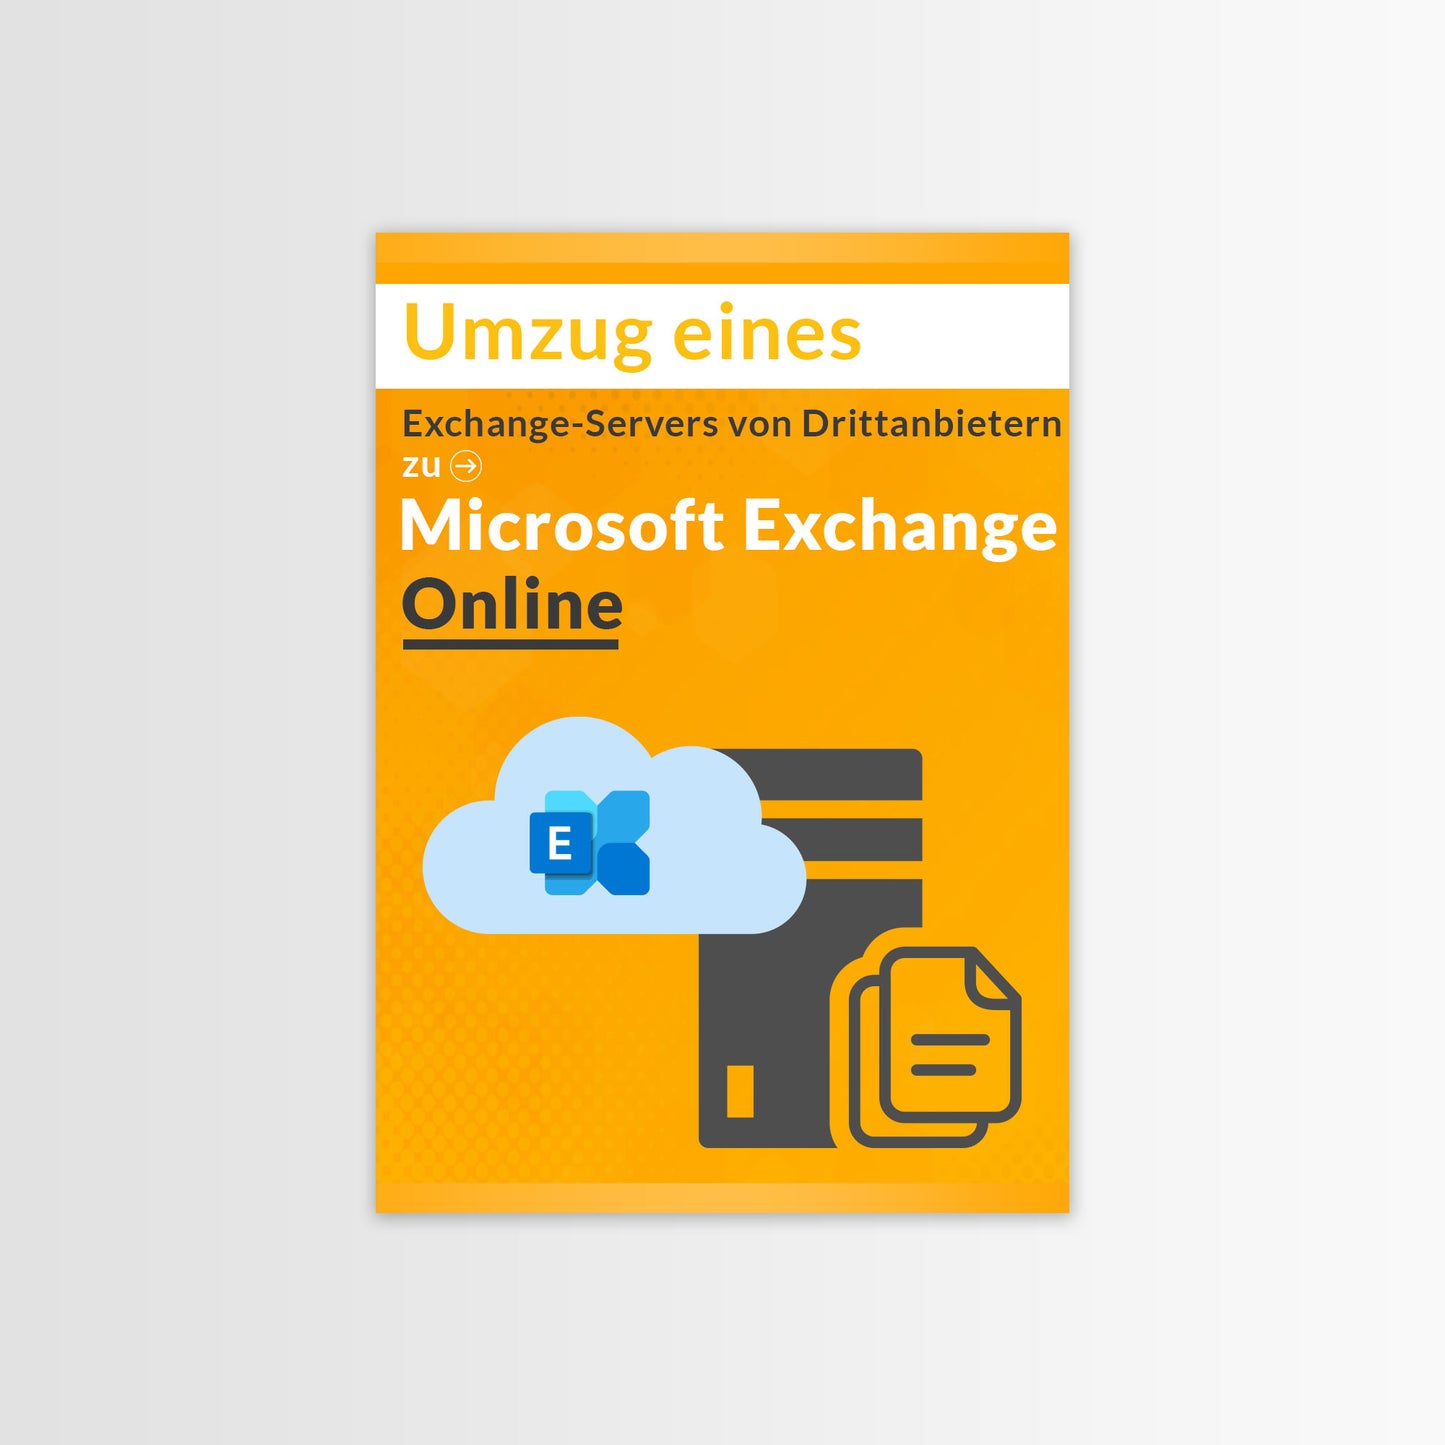 
                  
                    Umzug eines Exchange-Servers von Drittanbietern zu Microsoft Exchange Online
                  
                